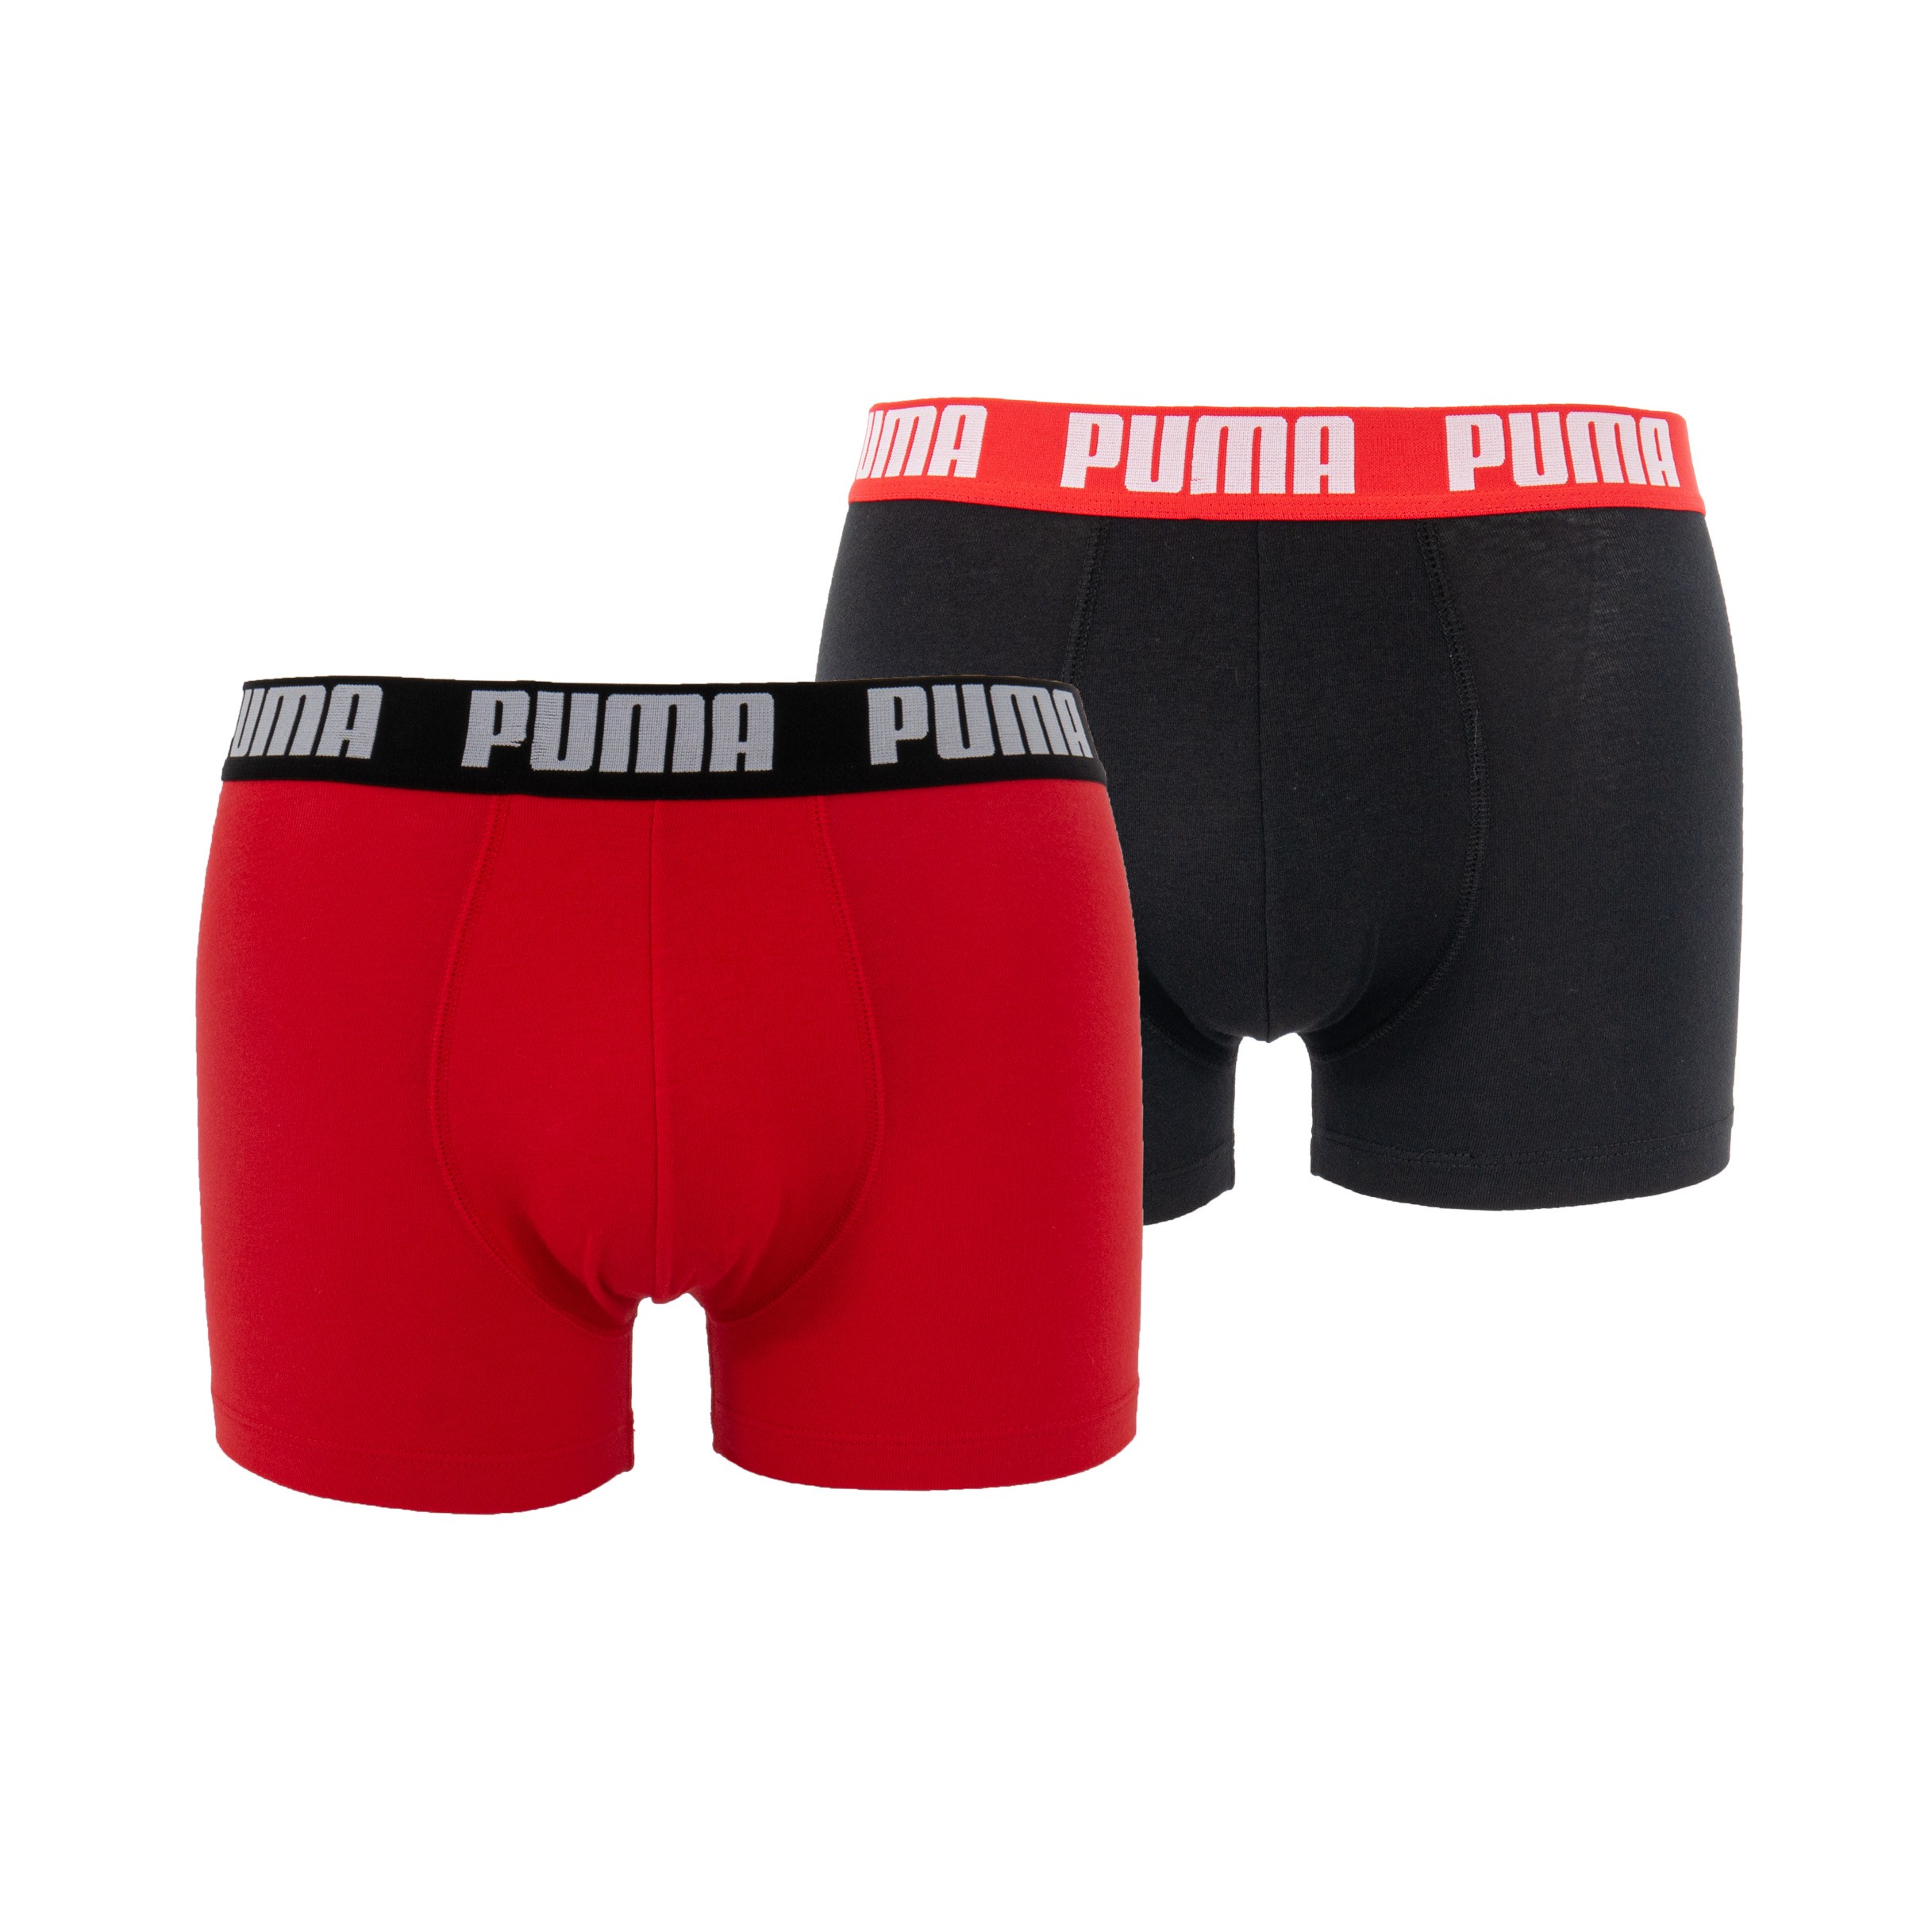 Bóxers PUMA básicos - rojo y negro - Puma : venta de Shorts Boxer